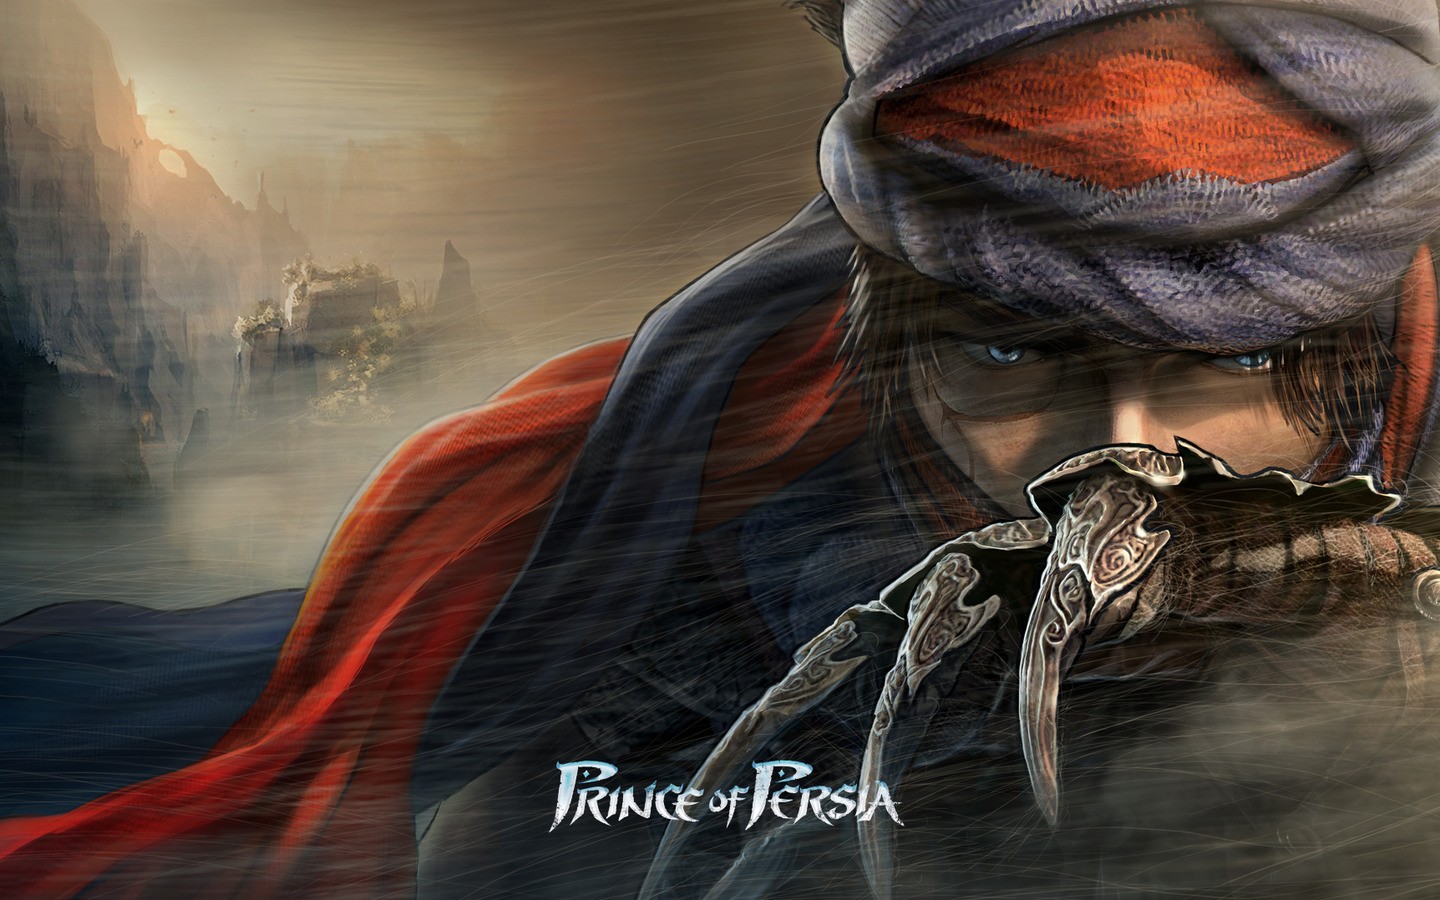 General 1440x900 video games Ubisoft blue eyes Prince of Persia (2008) video game art fantasy art video game men fantasy men